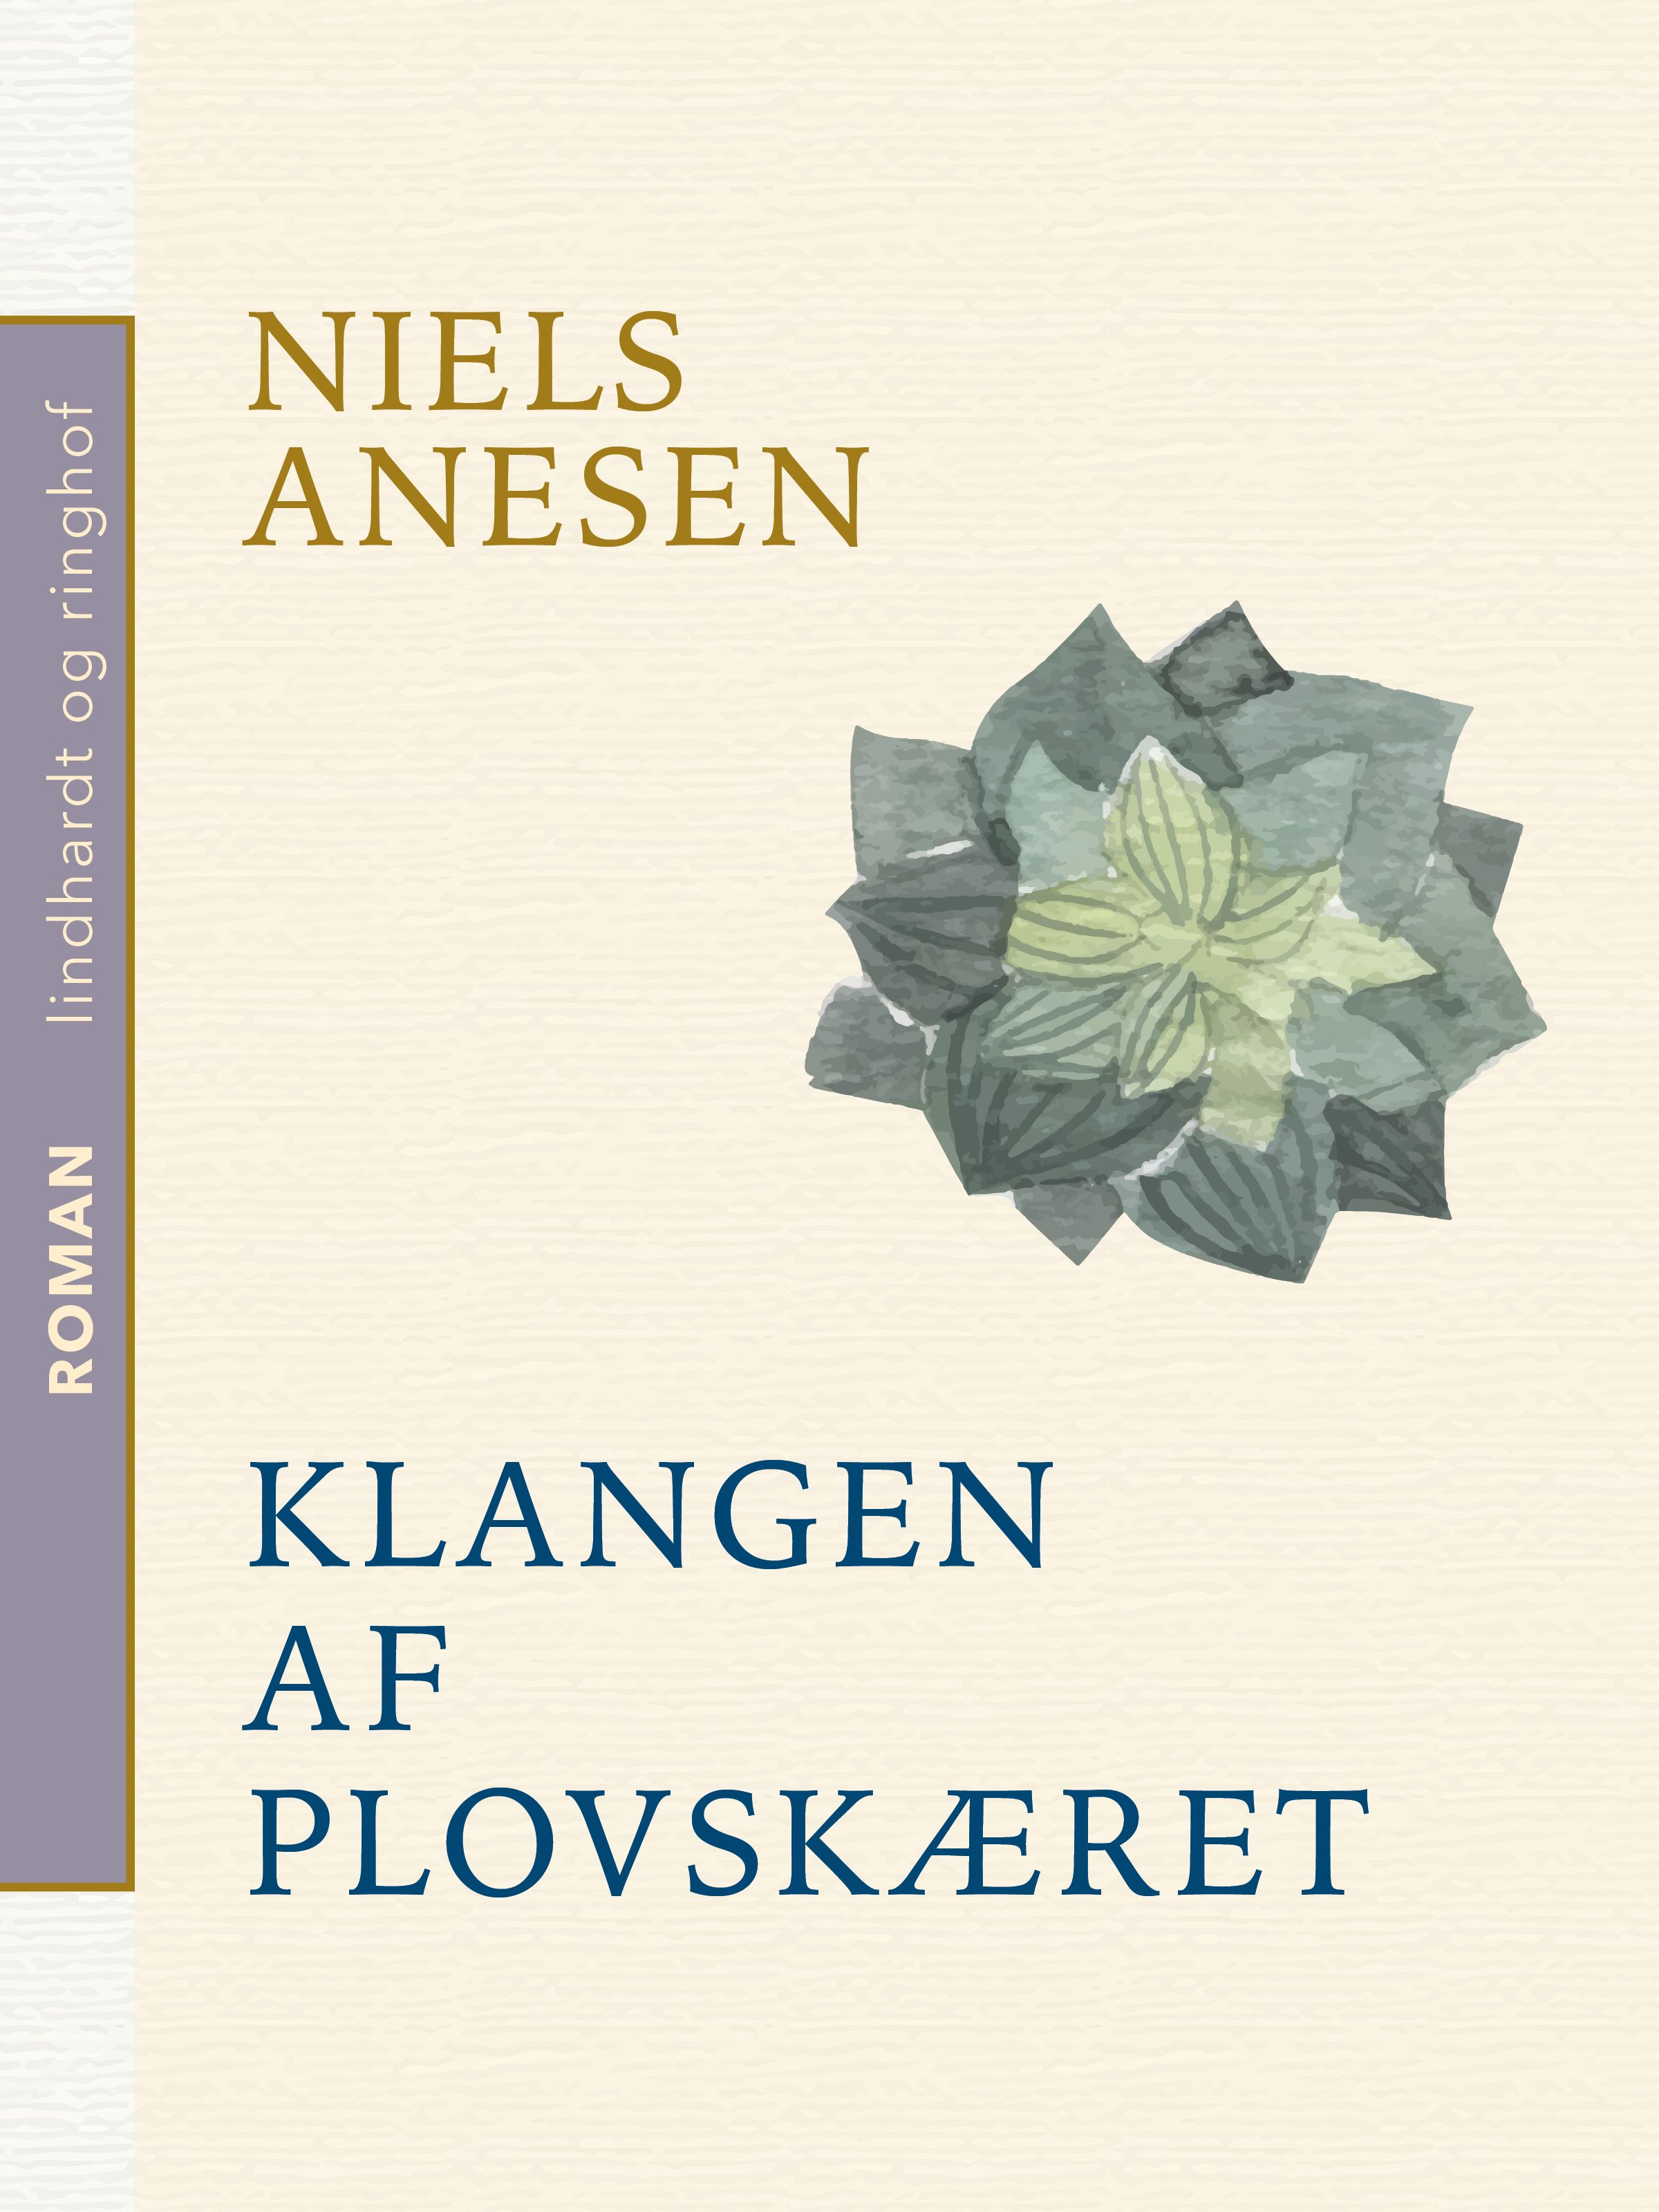 Klangen af plovskæret, e-bog af Niels Anesen